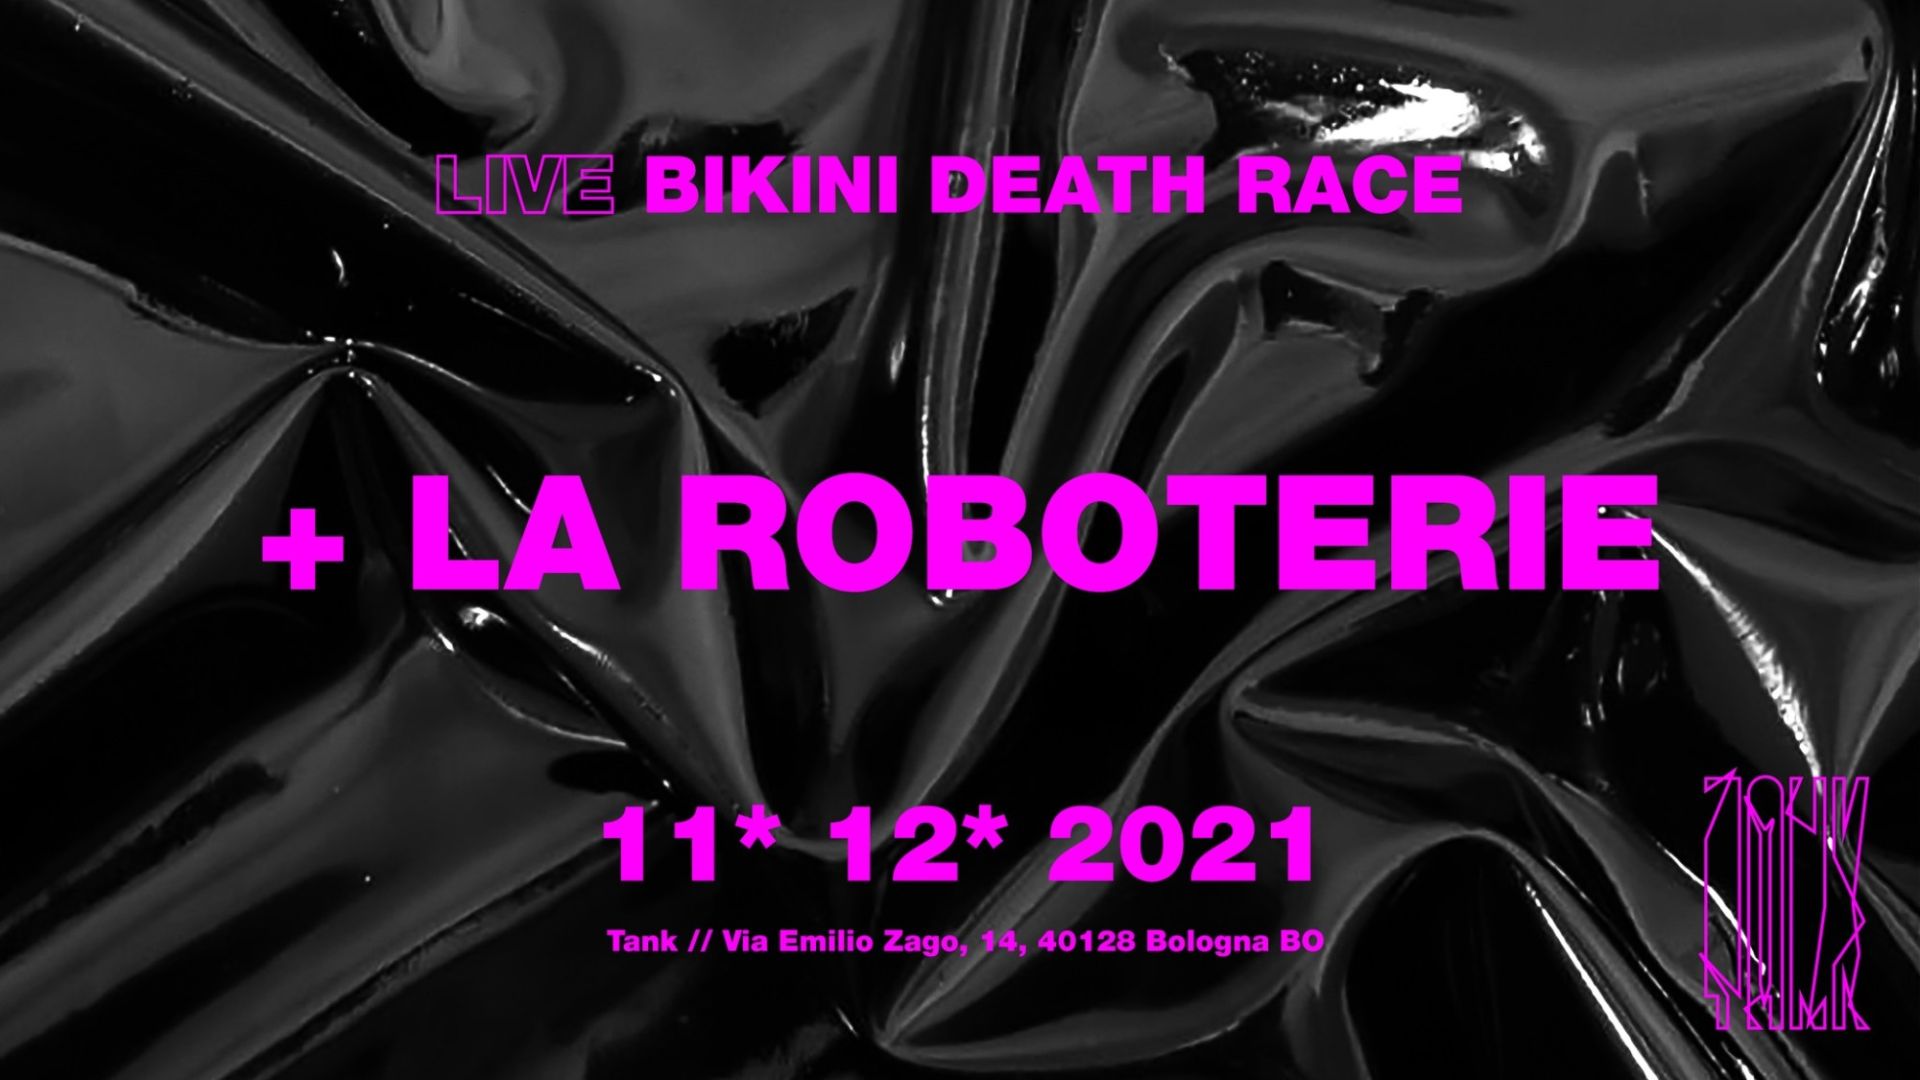 Live Bikini Death Race + LaRoboterie